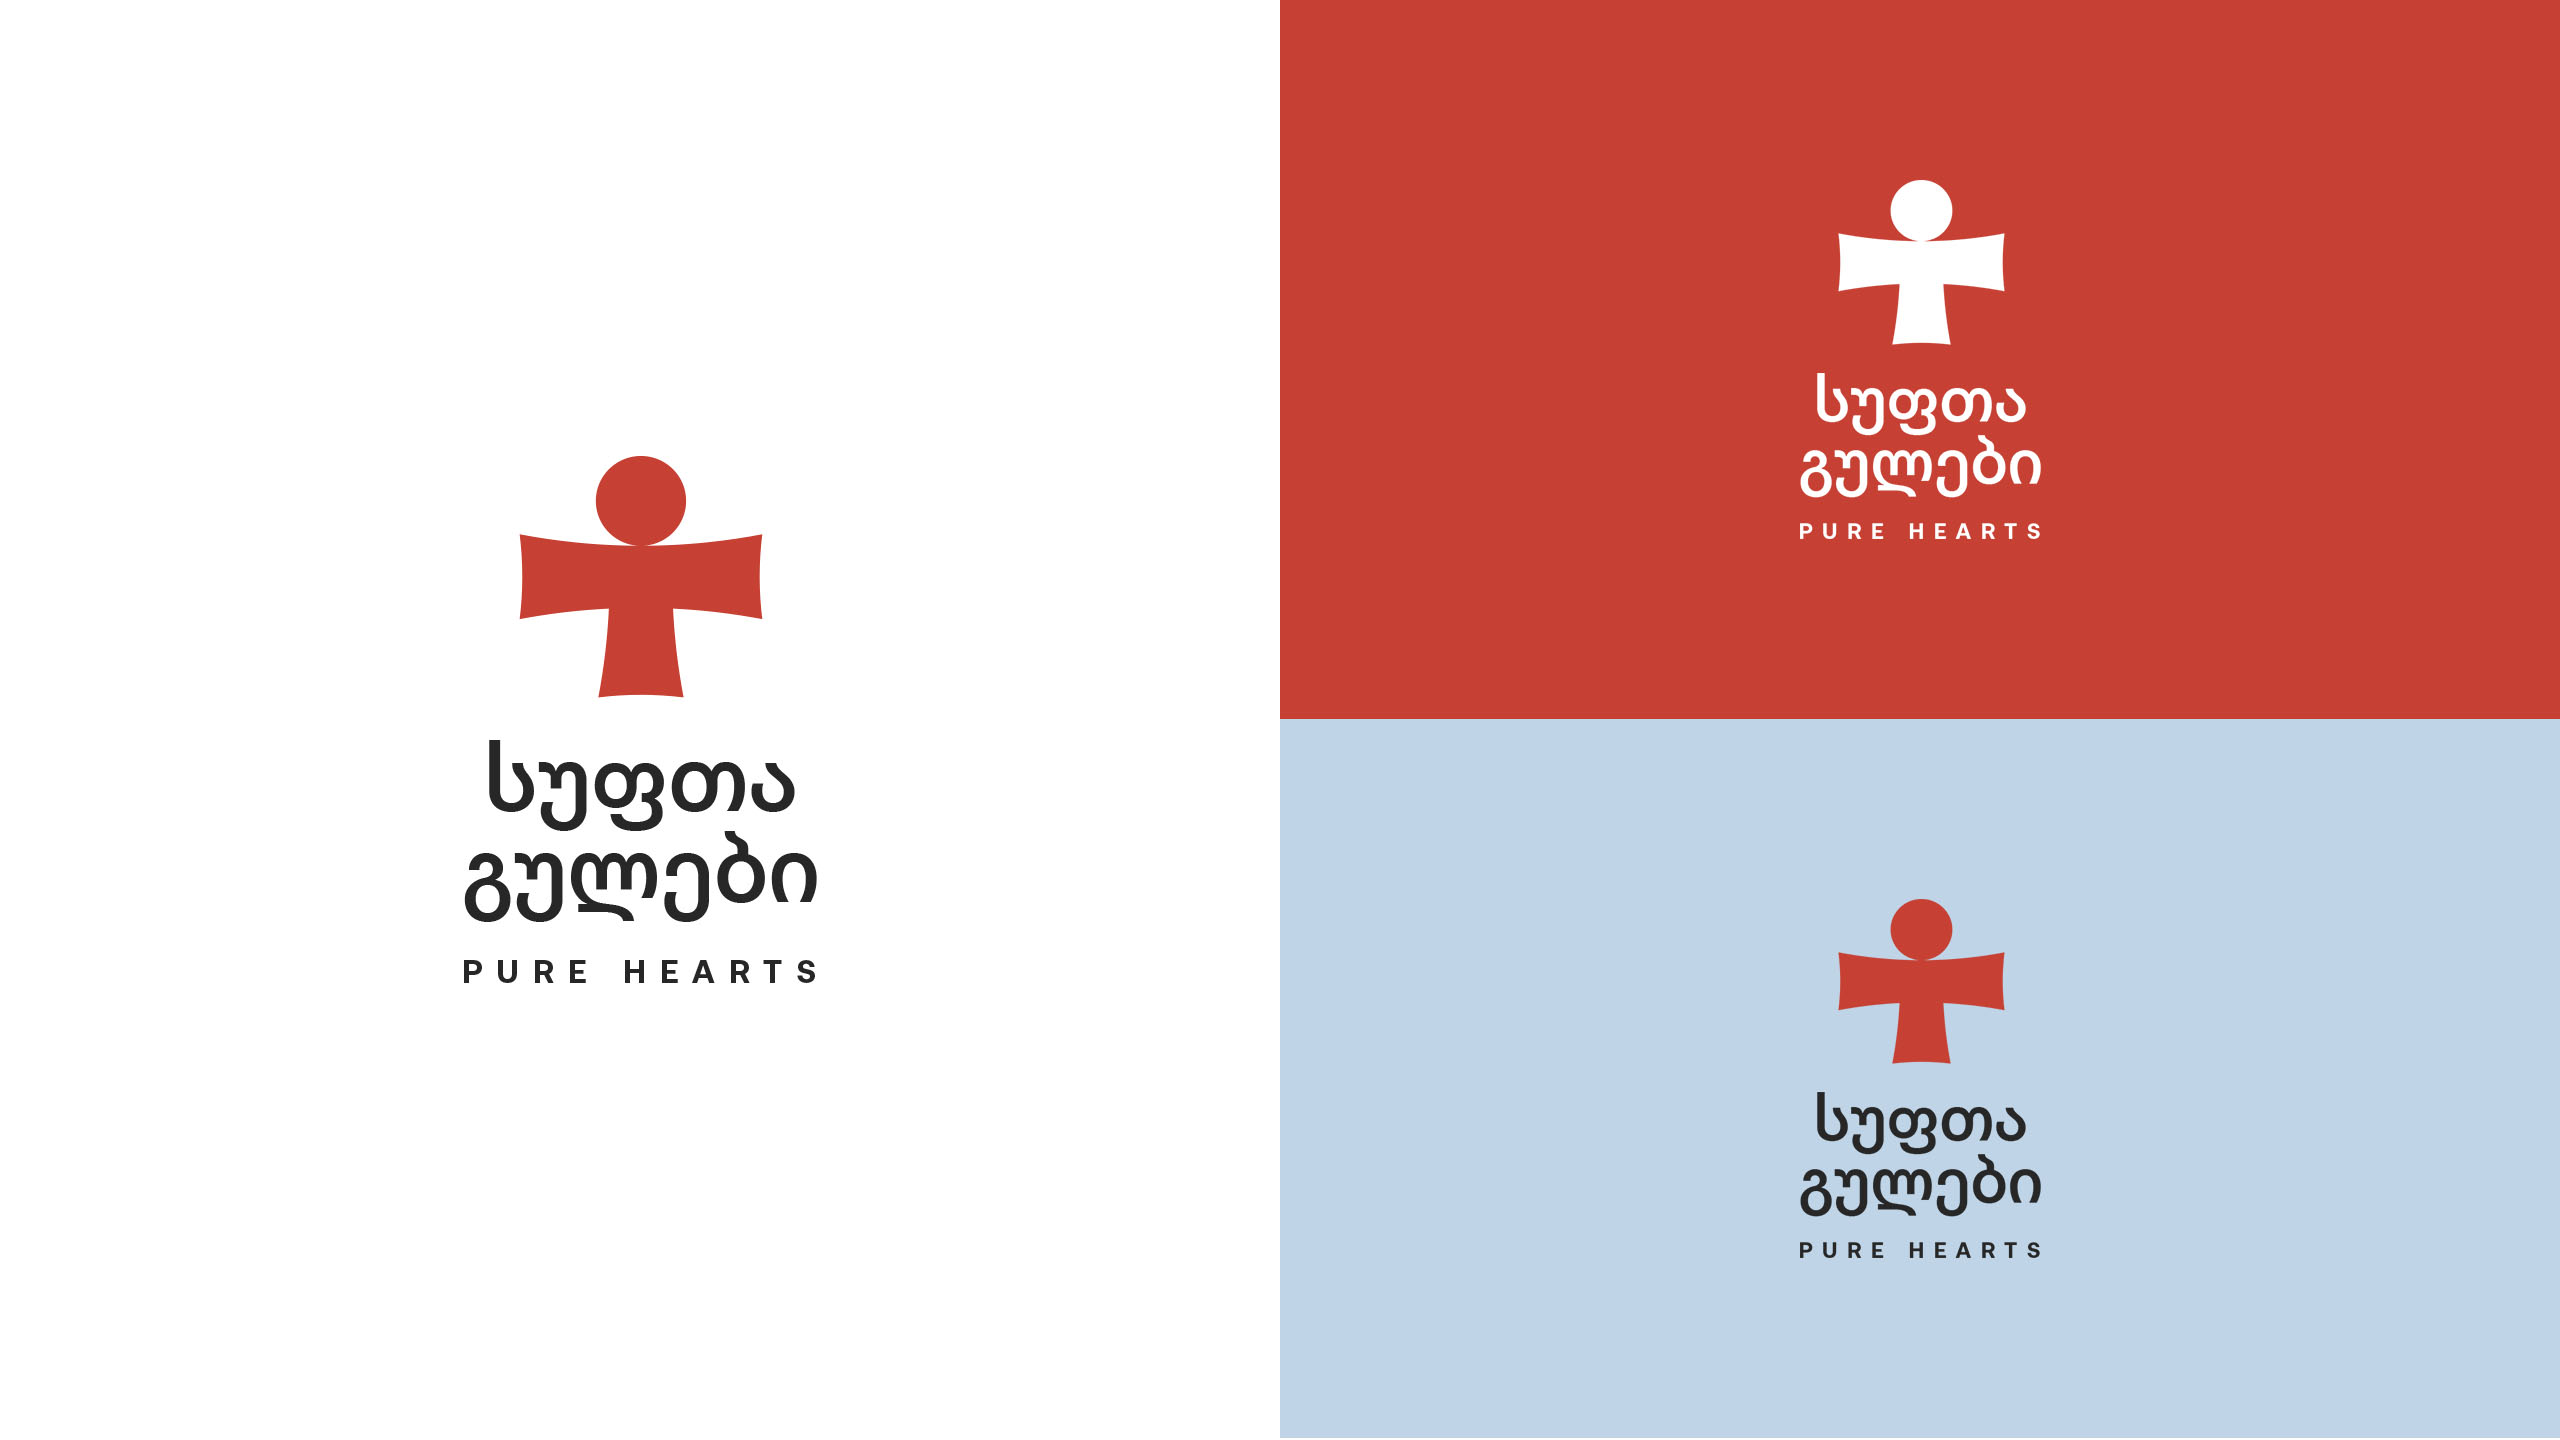 格鲁吉亚妇女慈善基金会视觉形象设计